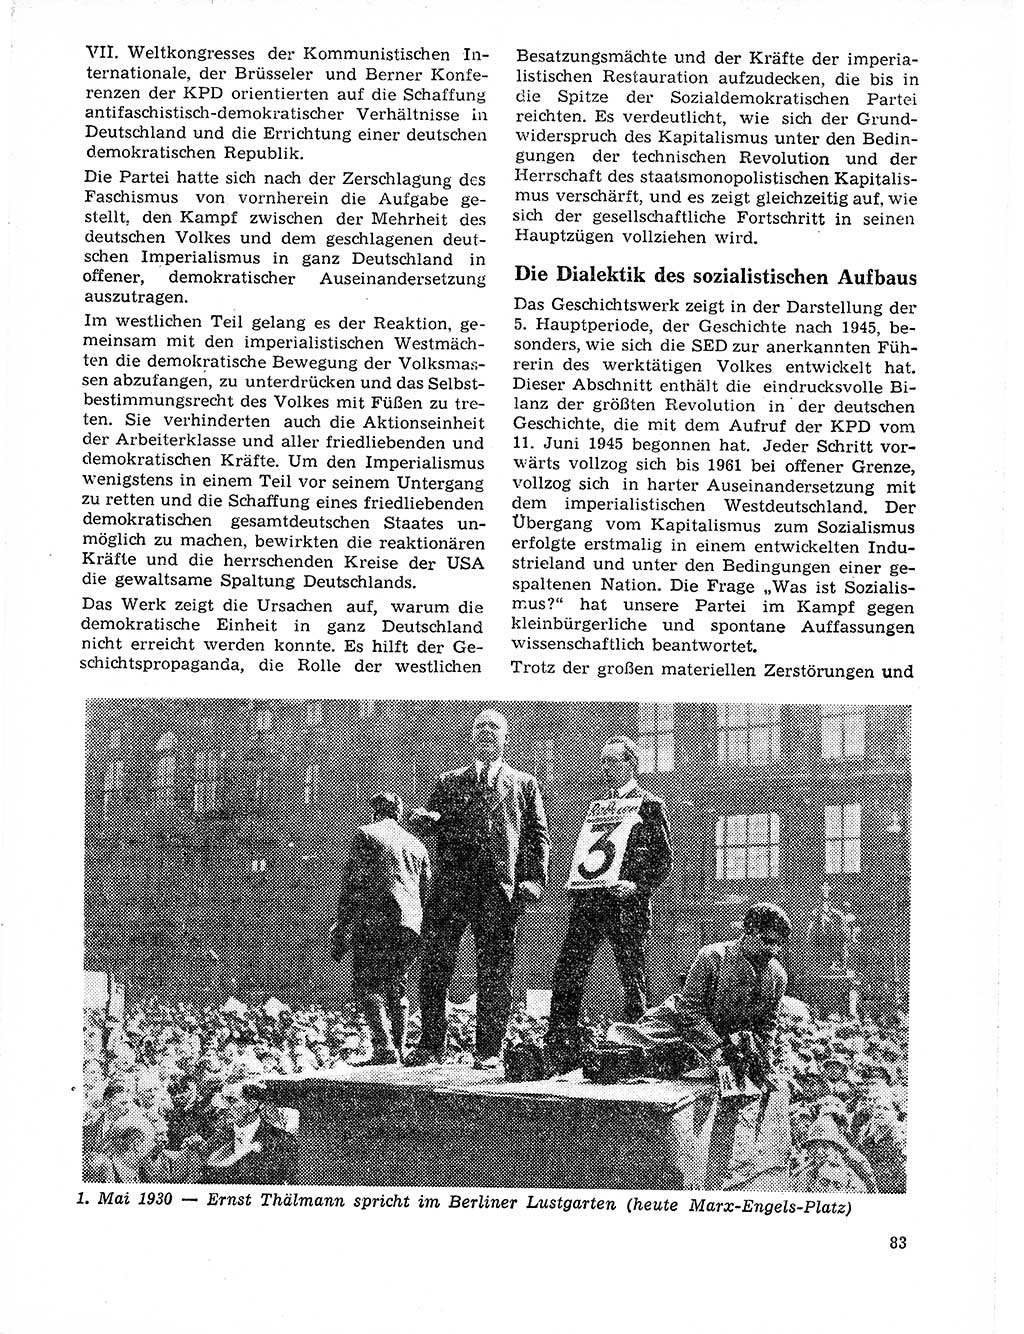 Neuer Weg (NW), Organ des Zentralkomitees (ZK) der SED (Sozialistische Einheitspartei Deutschlands) für Fragen des Parteilebens, 21. Jahrgang [Deutsche Demokratische Republik (DDR)] 1966, Seite 83 (NW ZK SED DDR 1966, S. 83)